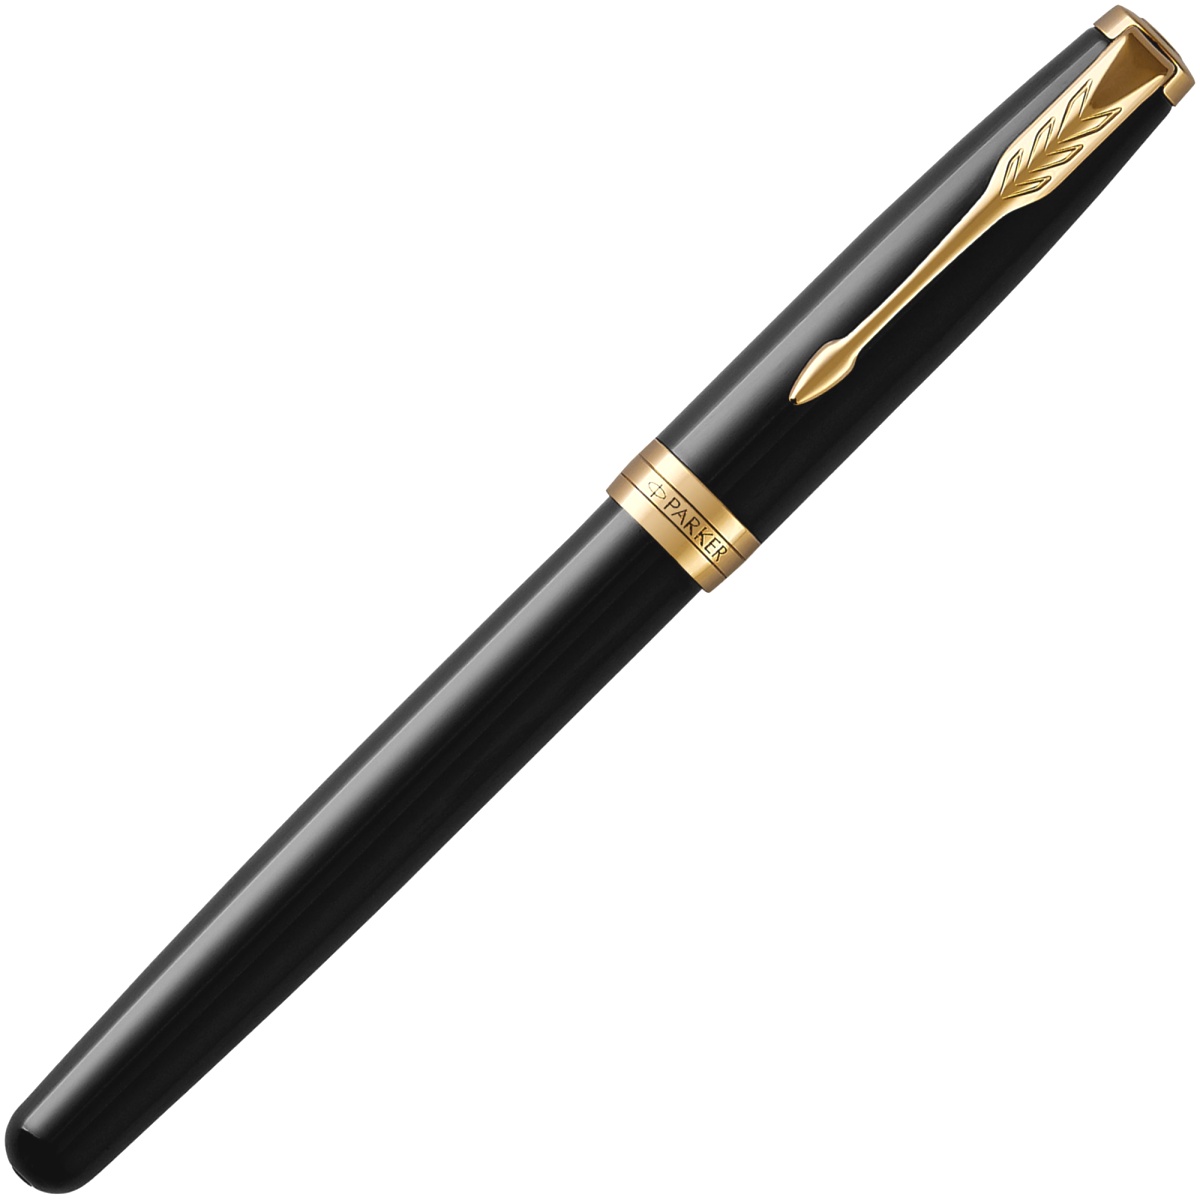  Перьевая ручка Parker Sonnet Core F530, Lacquer Deep Black GT (Перо F), фото 2